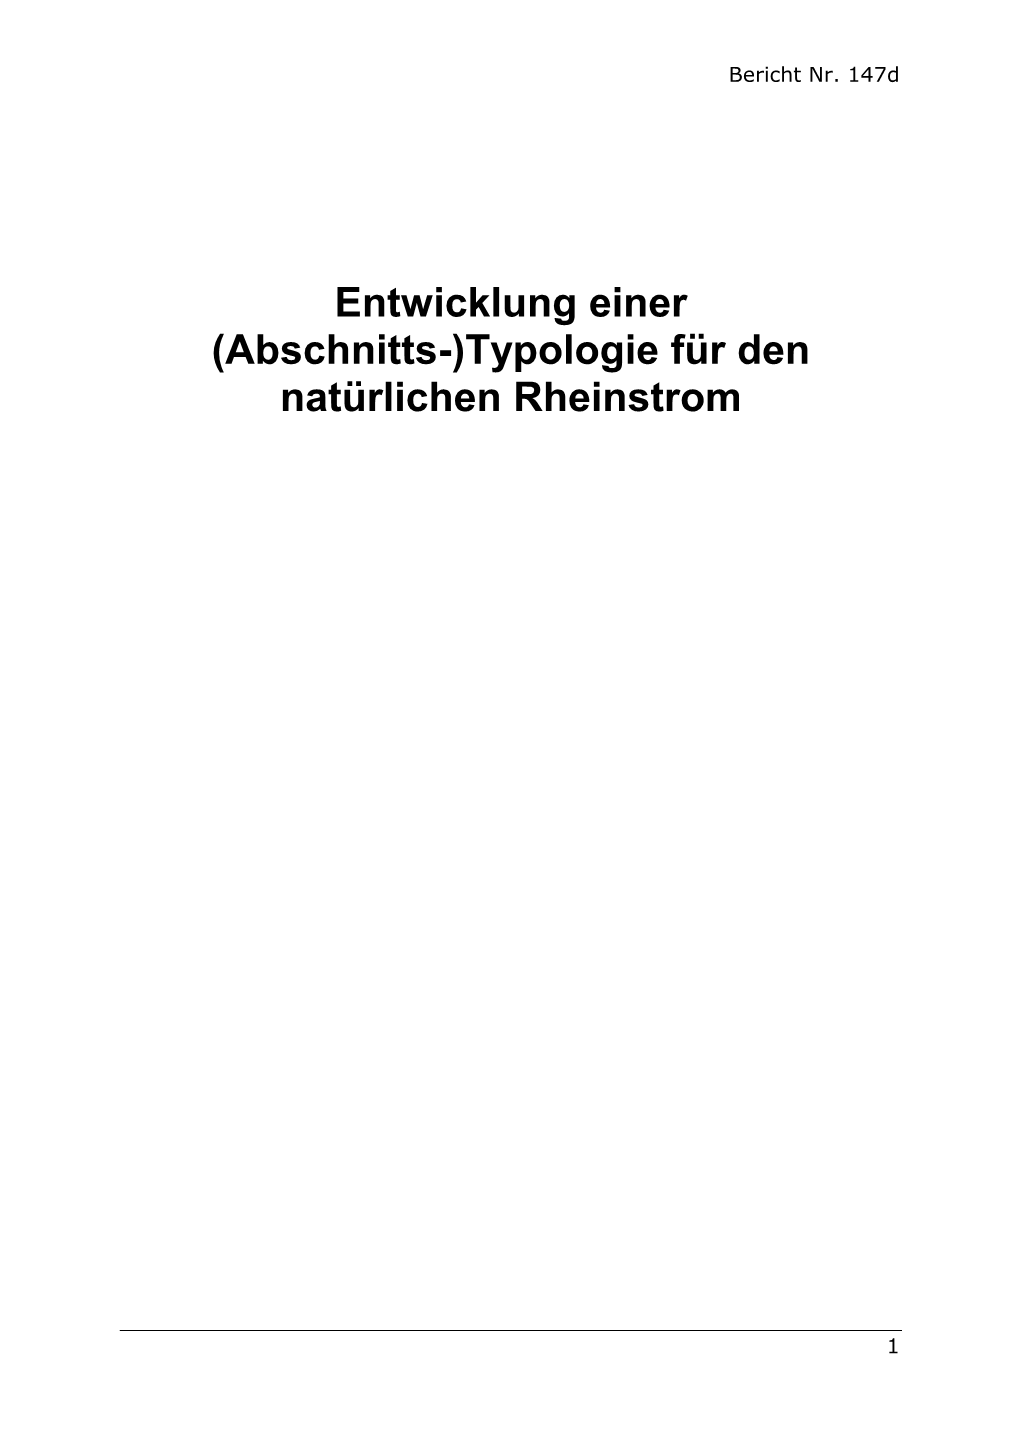 Typologie Für Den Natürlichen Rheinstrom